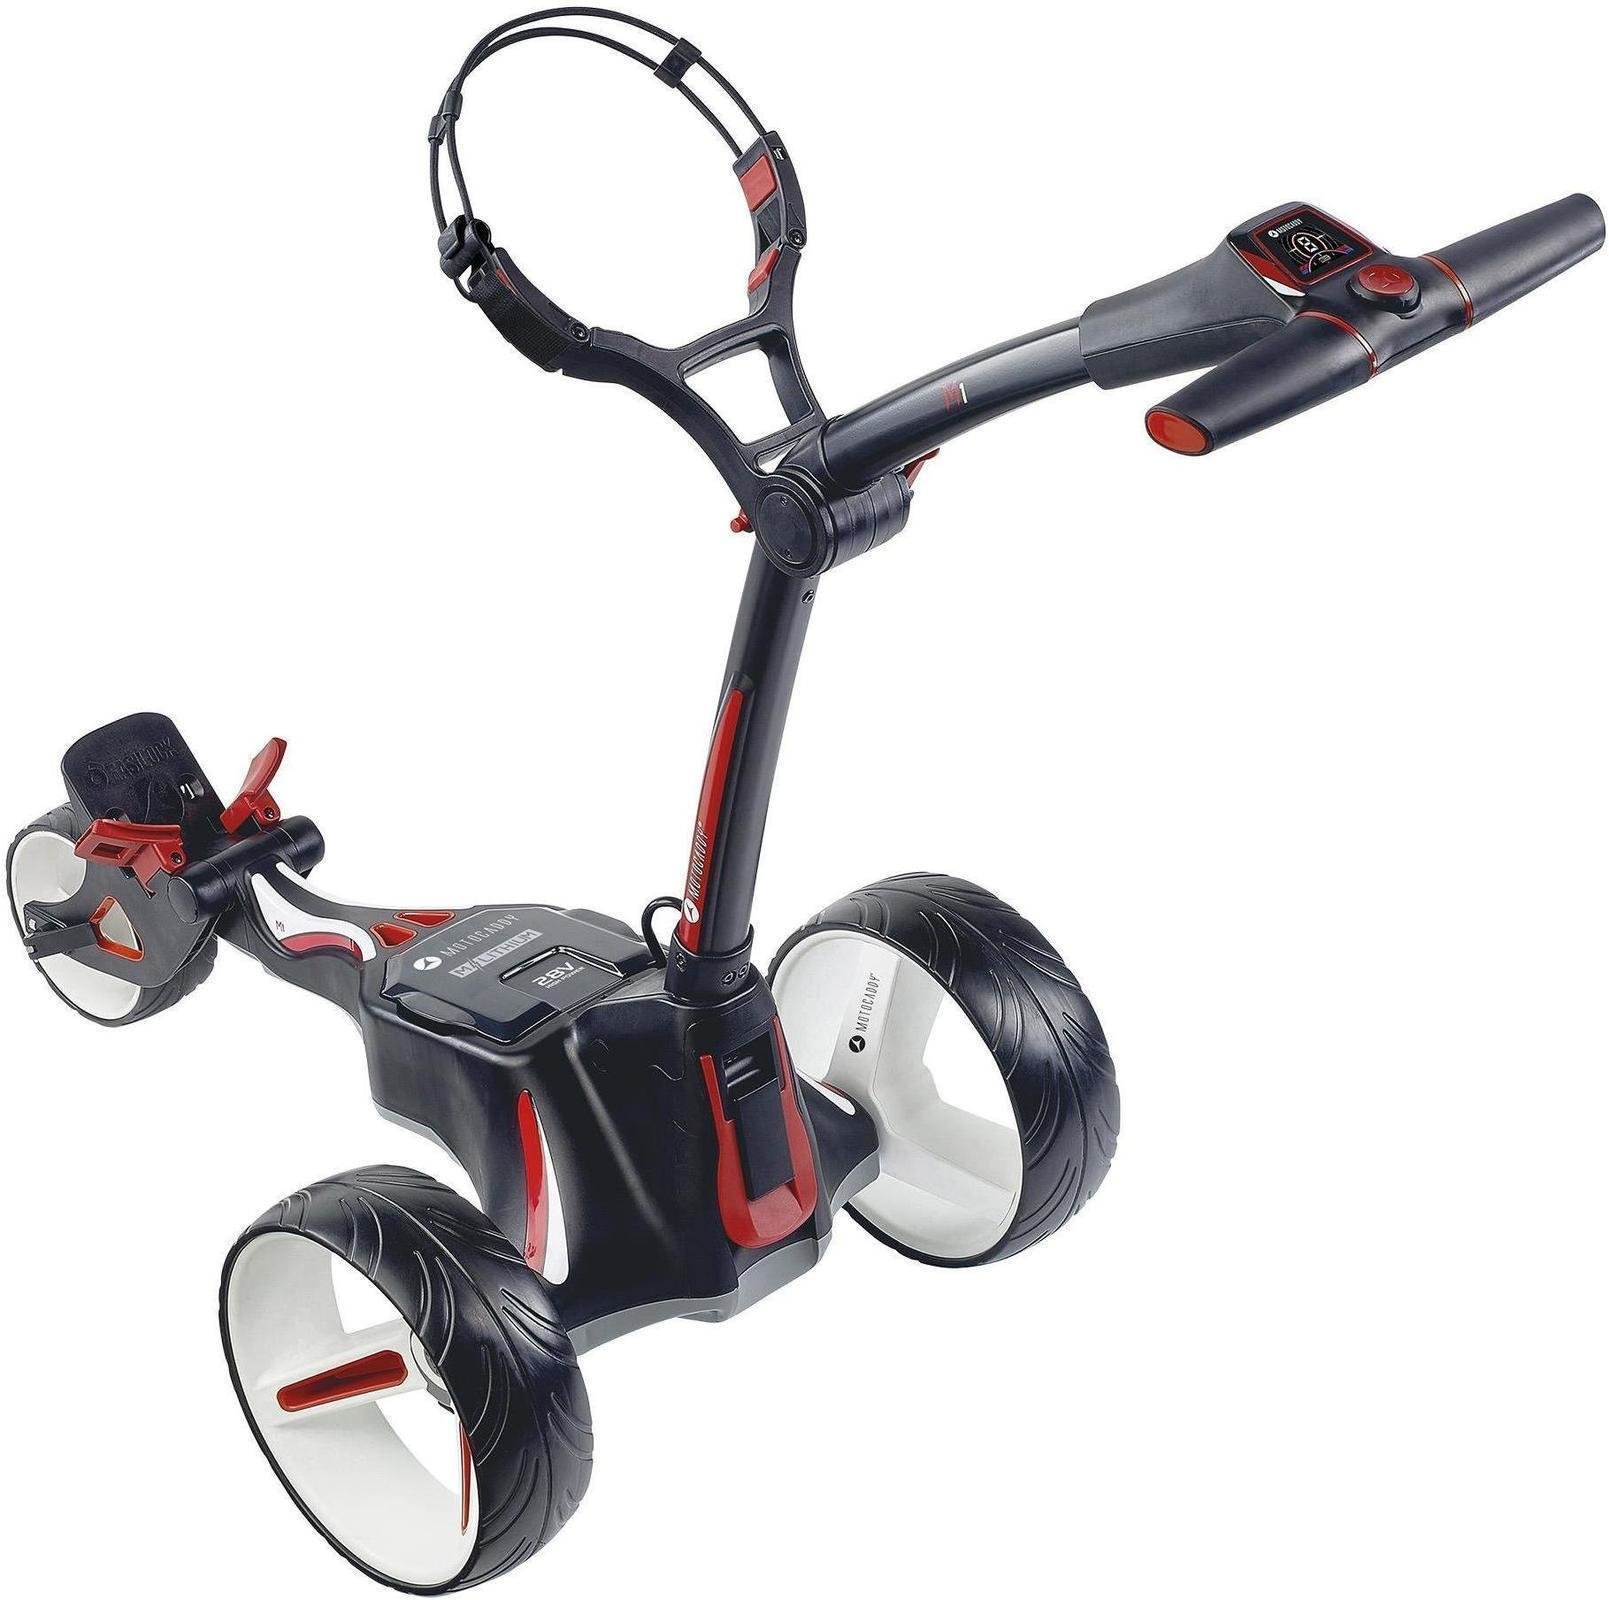 Wózek golfowy elektryczny Motocaddy M1 2018 Black Wózek golfowy elektryczny